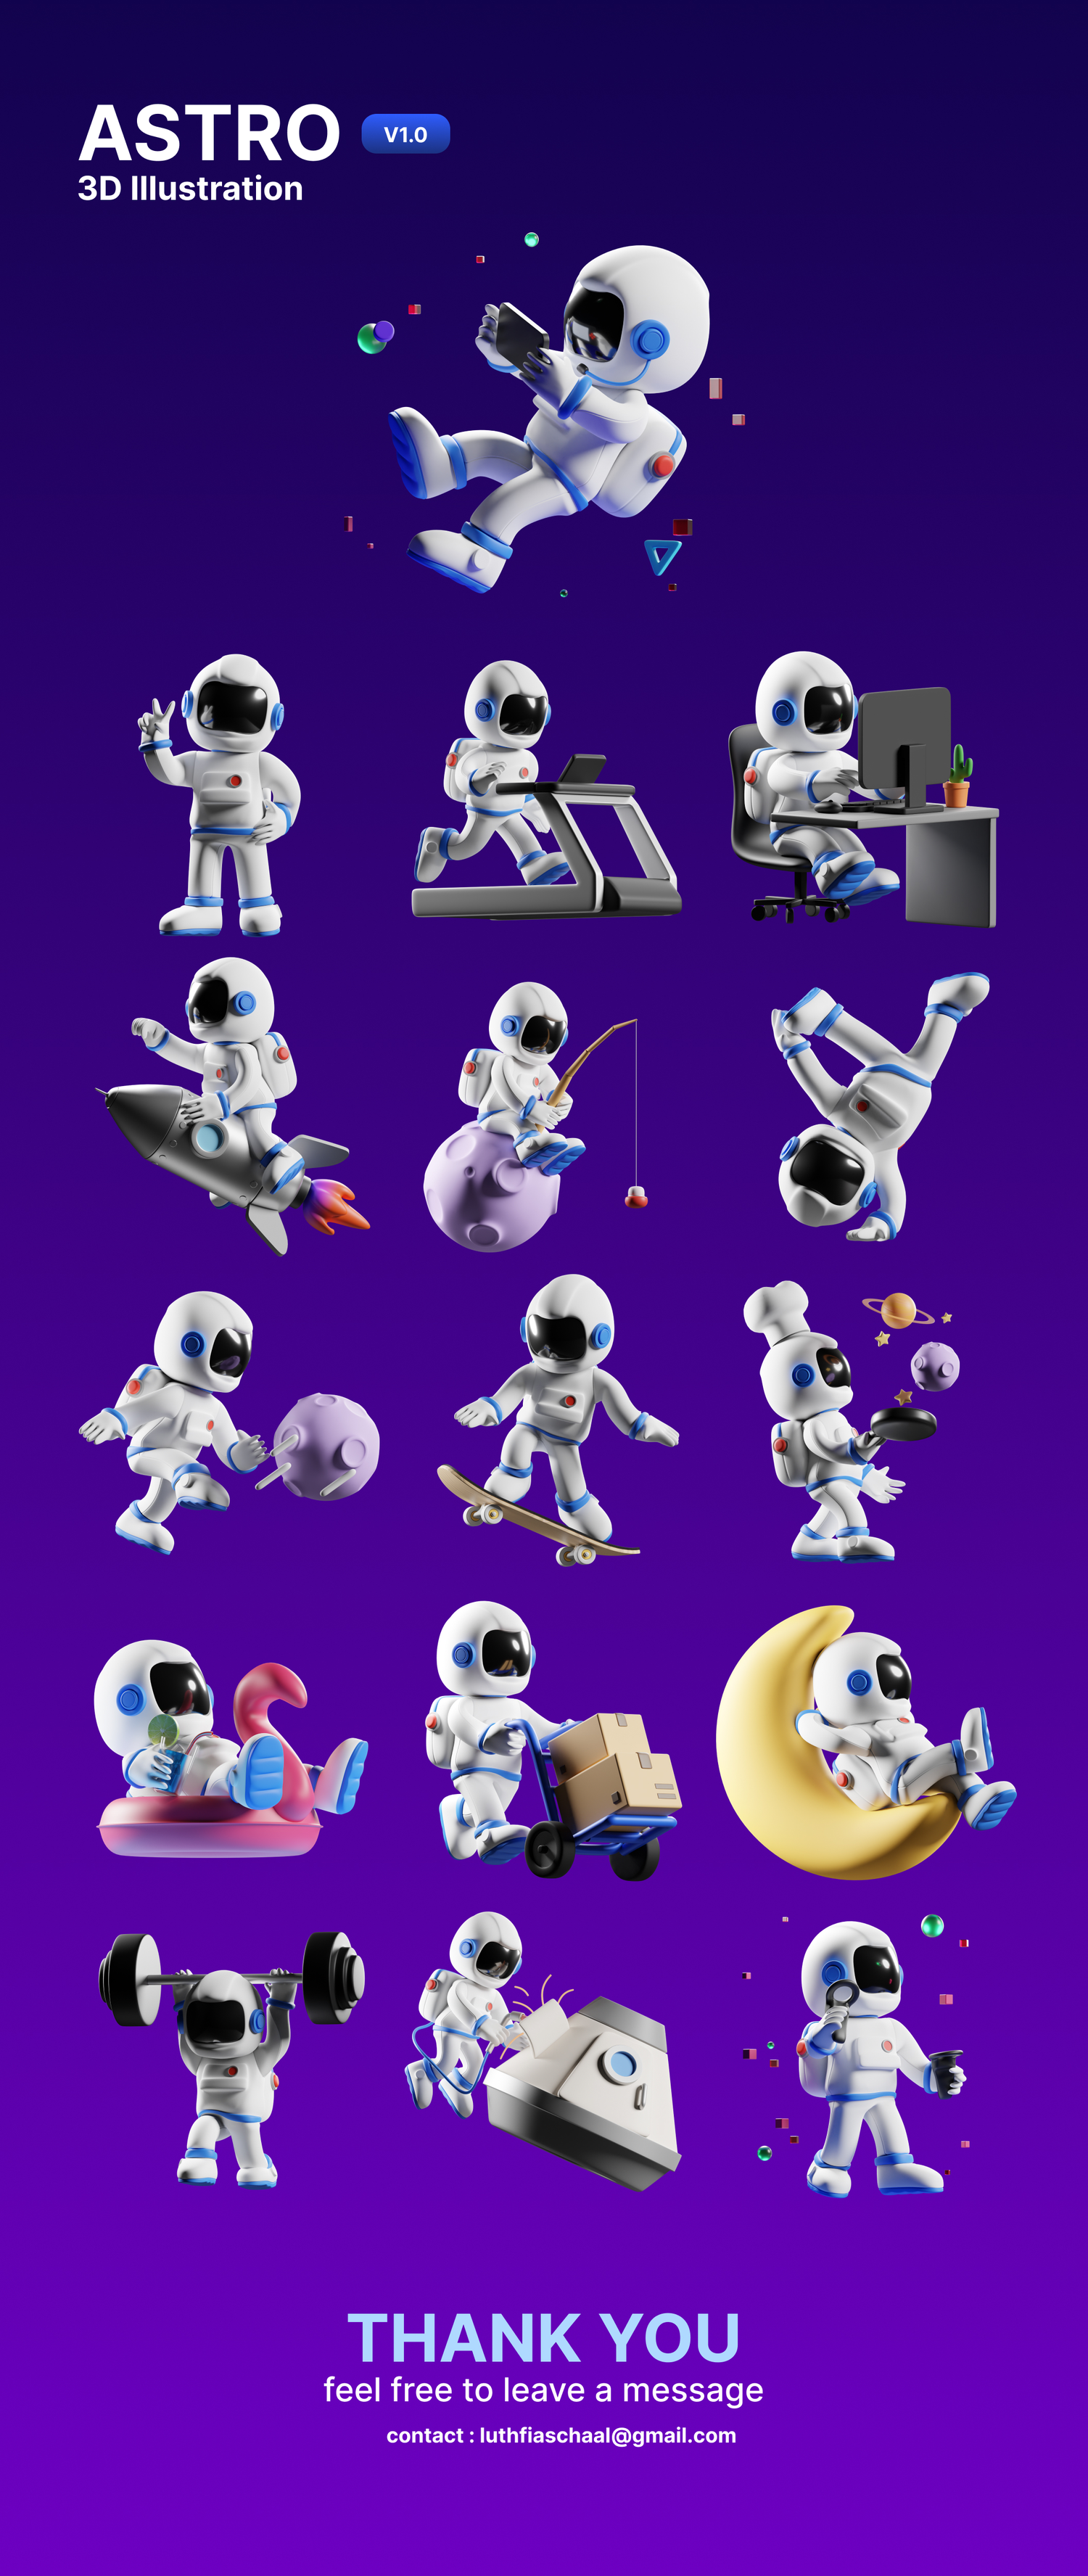 3589 16款3D立体卡通可爱空间站宇航员插图插画png免抠图片设计素材Astro 3D Illustration